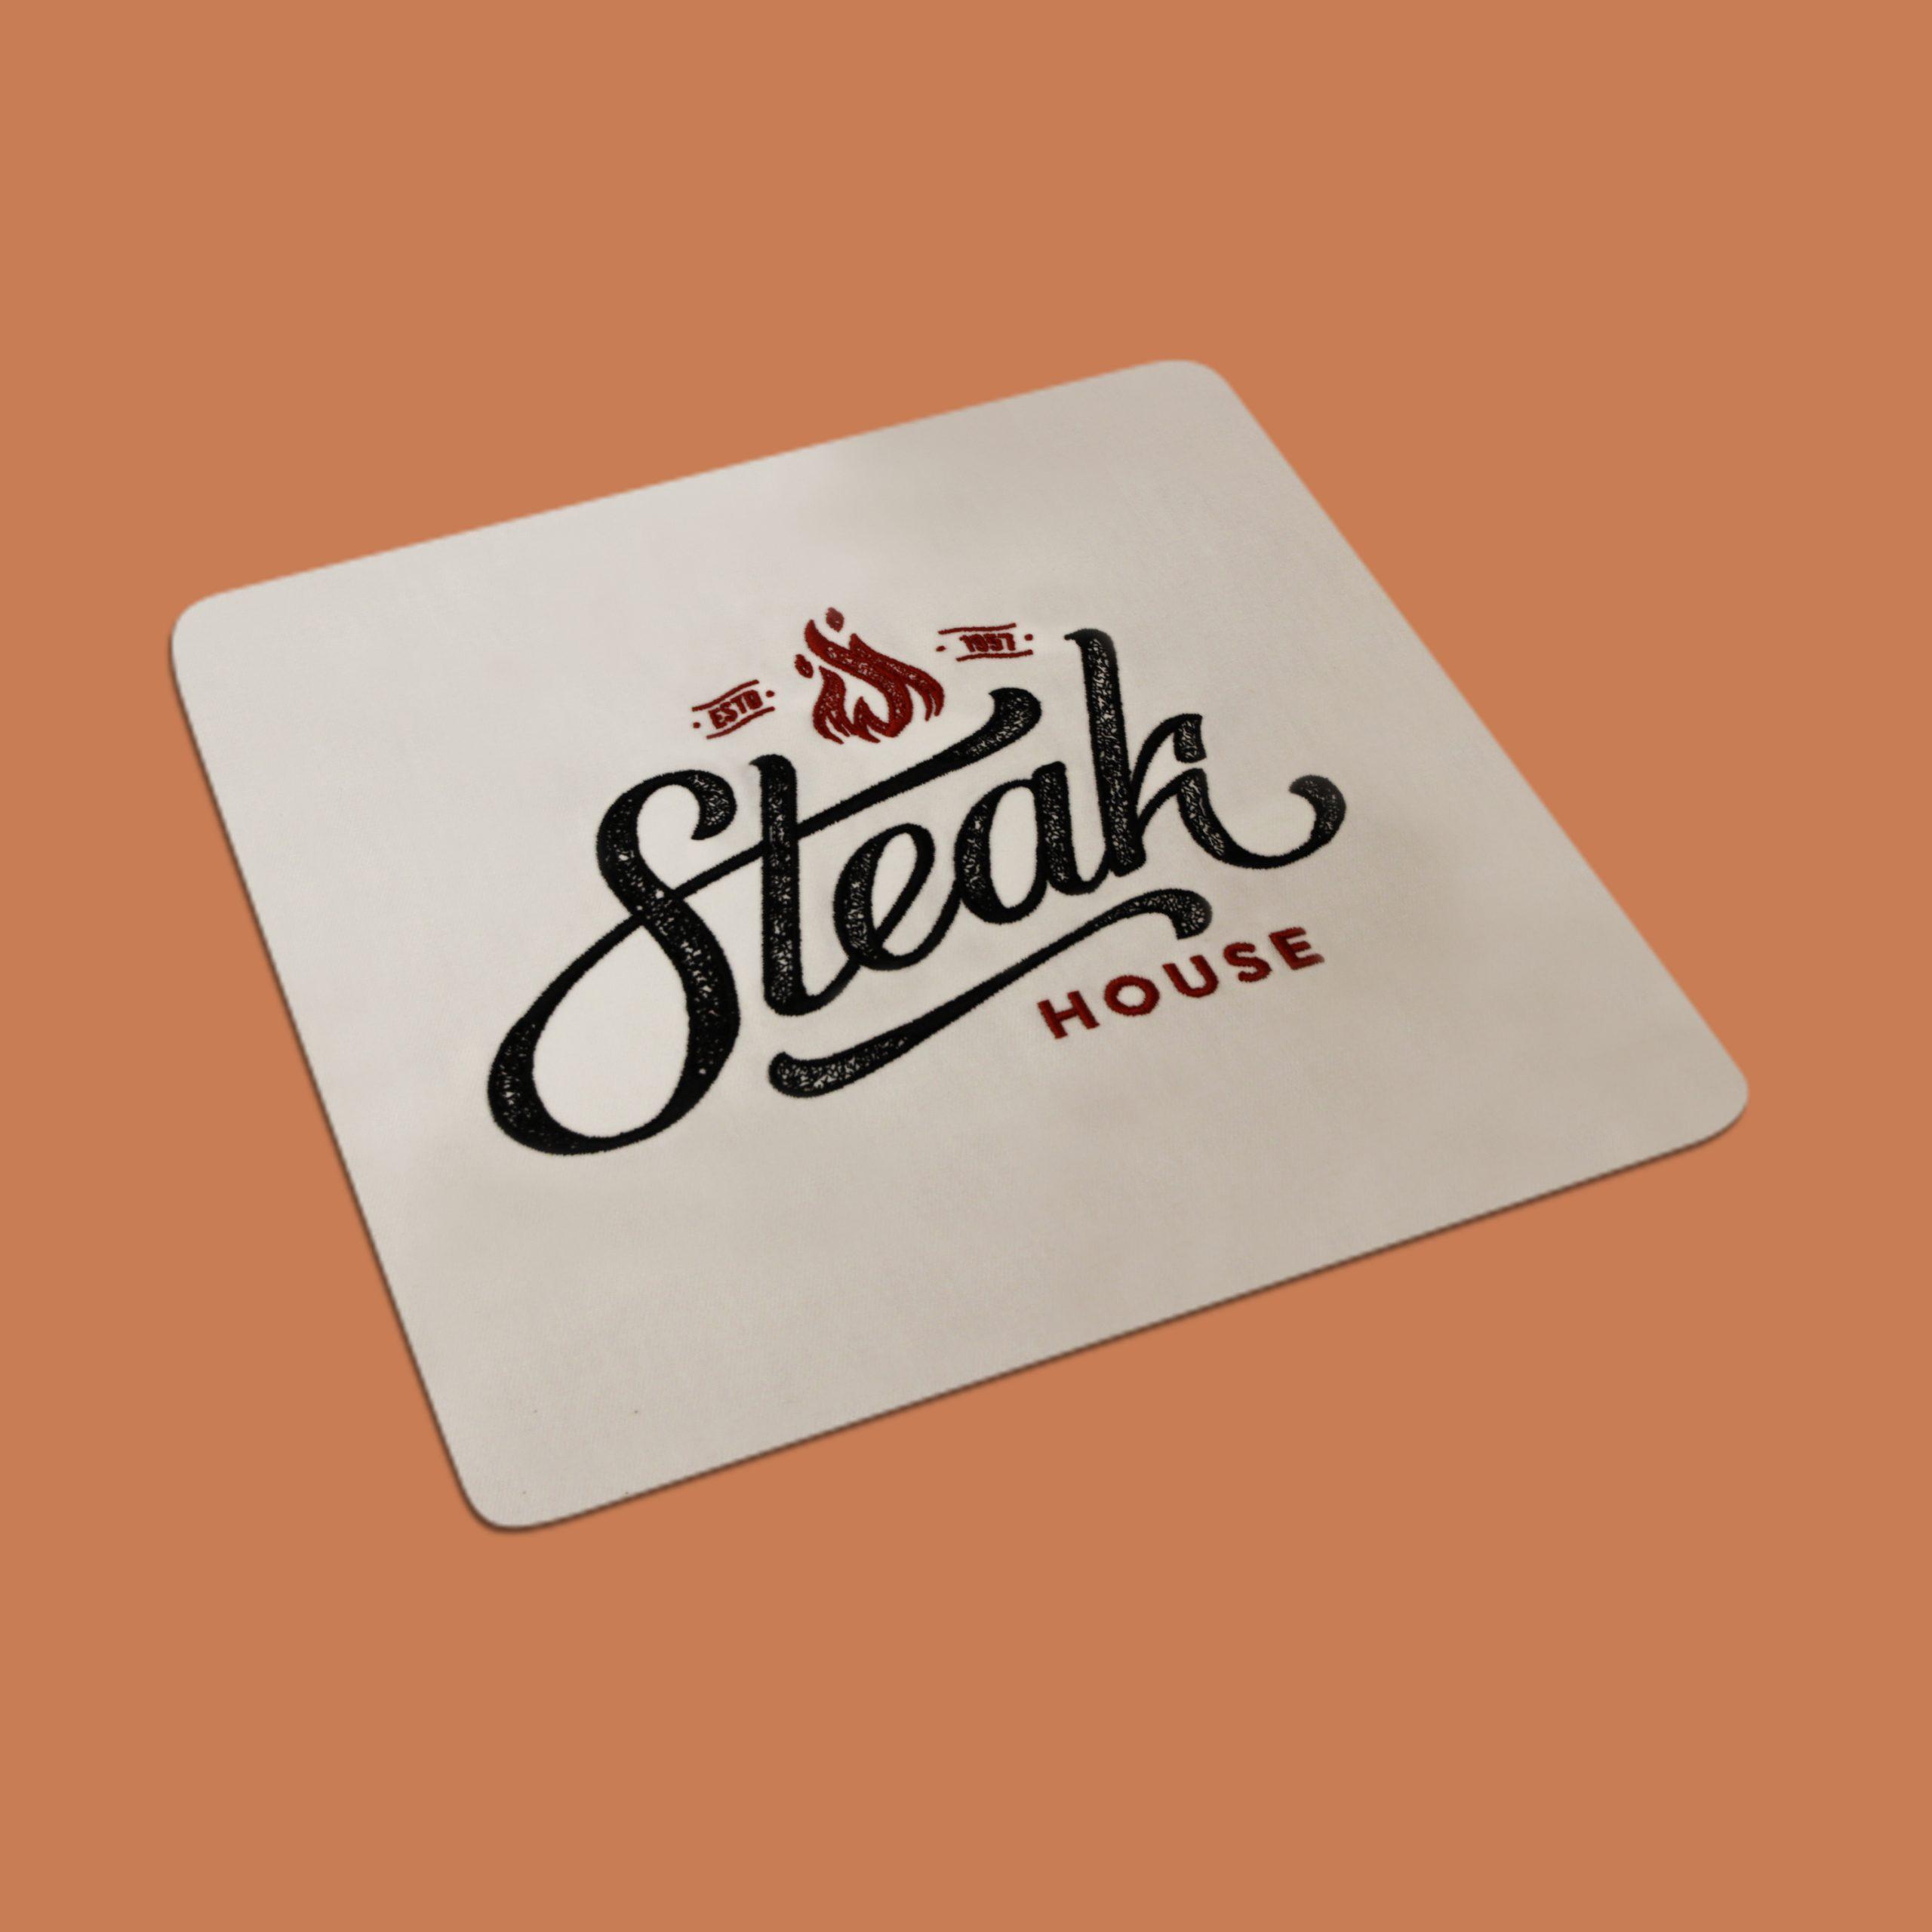 Beispiel Stick Lion Werbe GmbH - Steak House